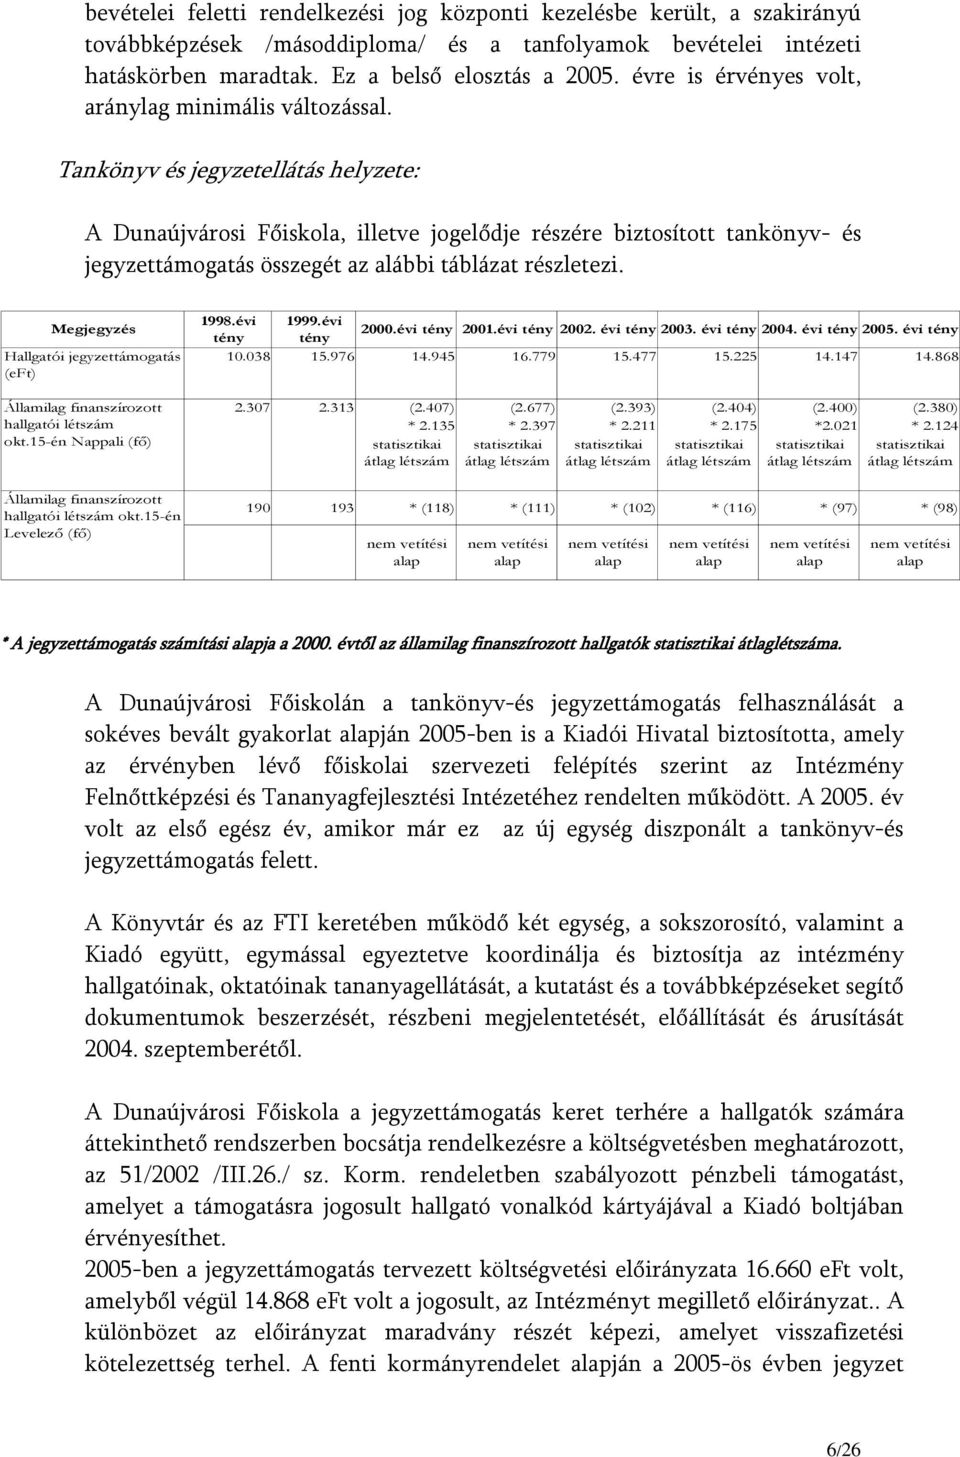 Tankönyv és jegyzetellátás helyzete: A Dunaújvárosi Főiskola, illetve jogelődje részére biztosított tankönyv- és jegyzettámogatás összegét az alábbi táblázat részletezi.